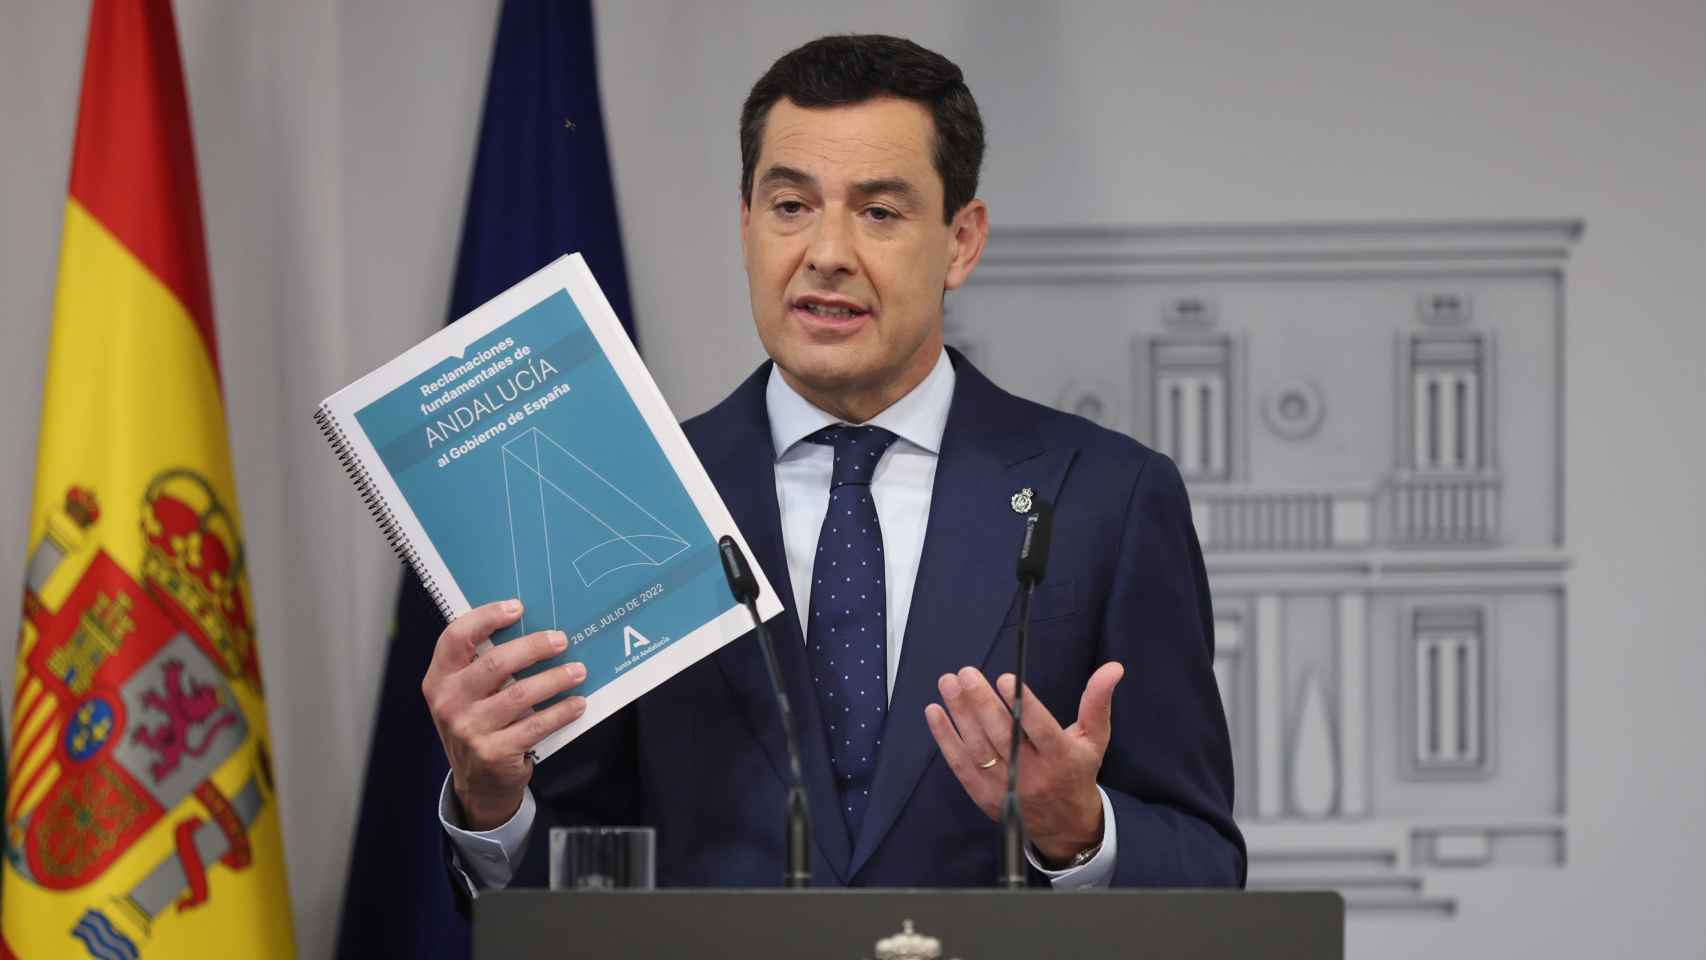 El presidente del Gobierno andaluz, Juanma Moreno, enseña en rueda de prensa el documento con las reivindicaciones que presentó a Pedro Sánchez.